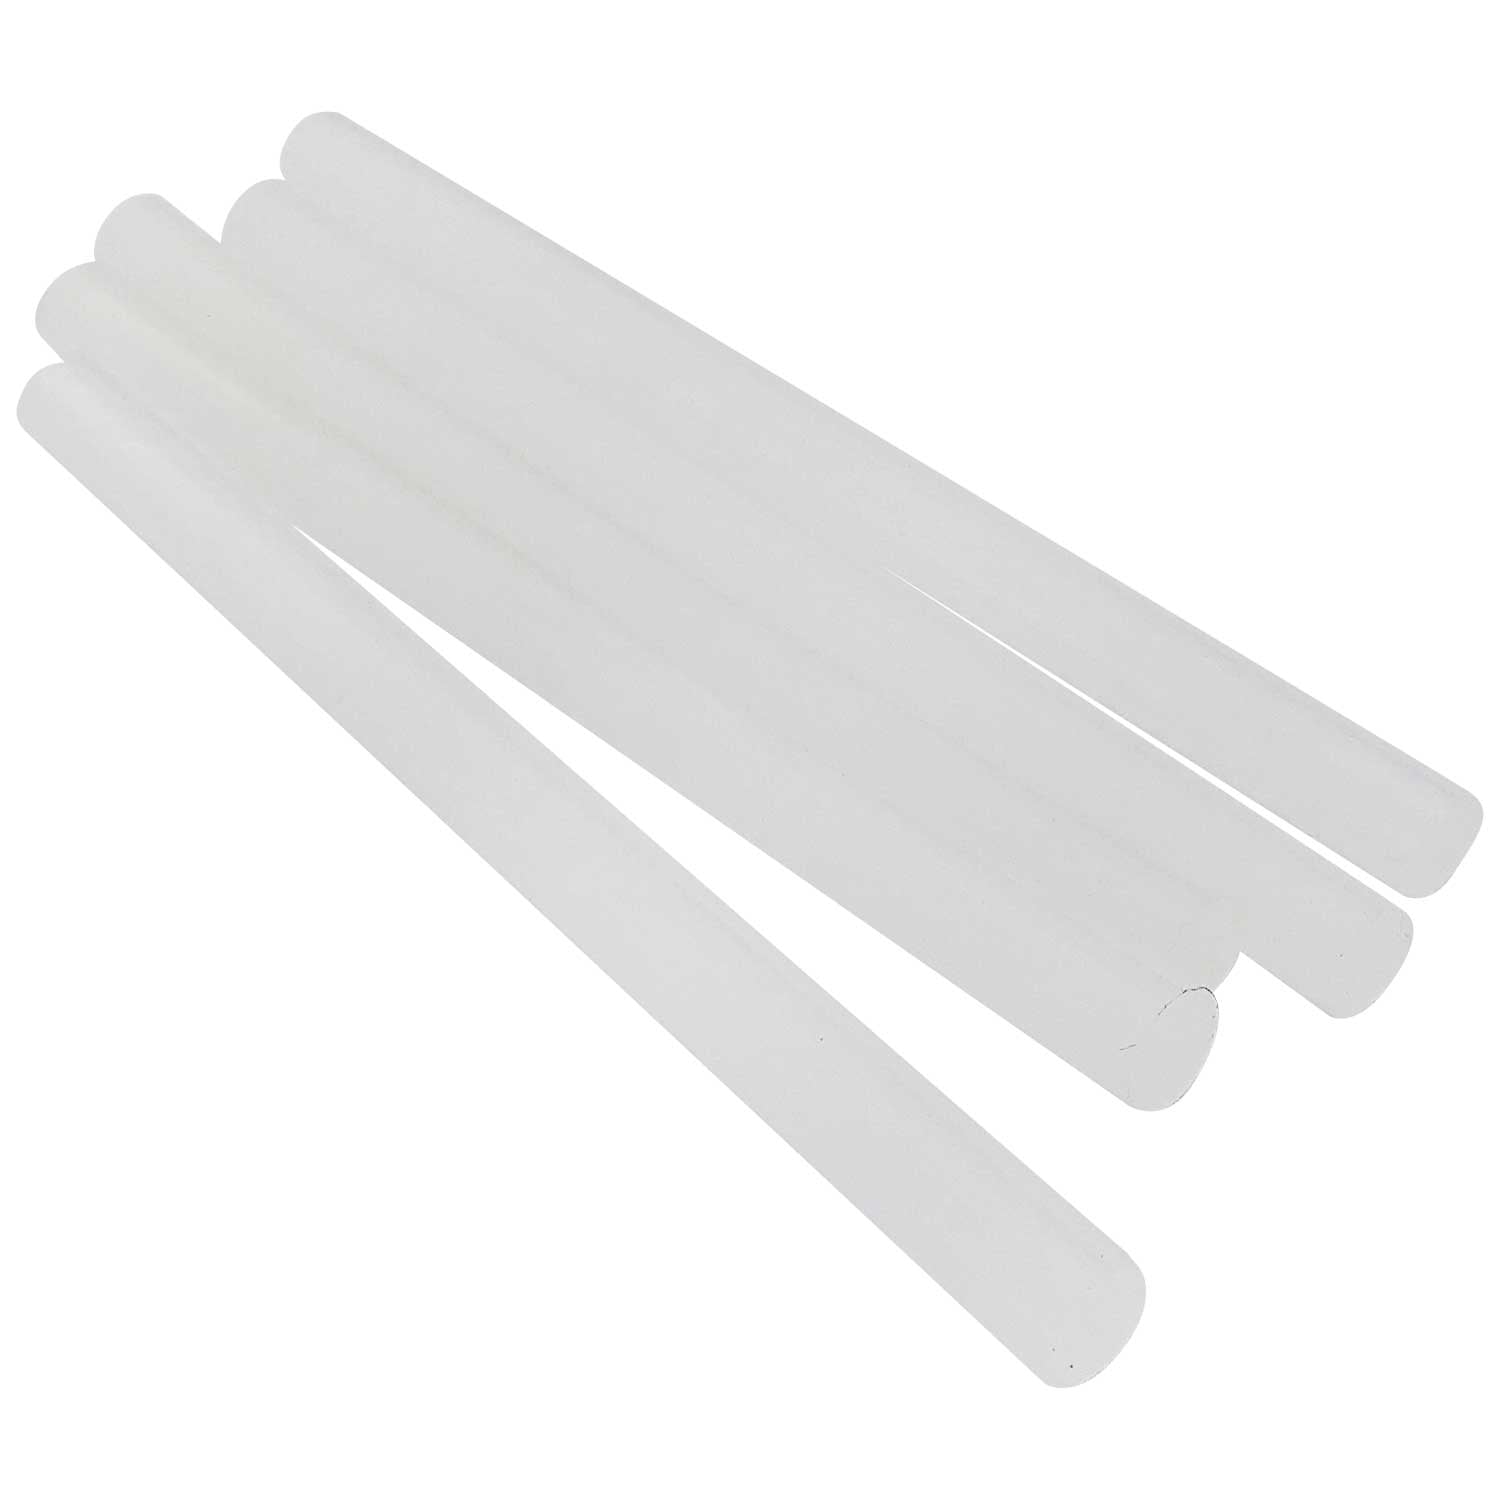 7784-12 Temperature resistant 1/2 diameter glue sticks - Bond Products Inc